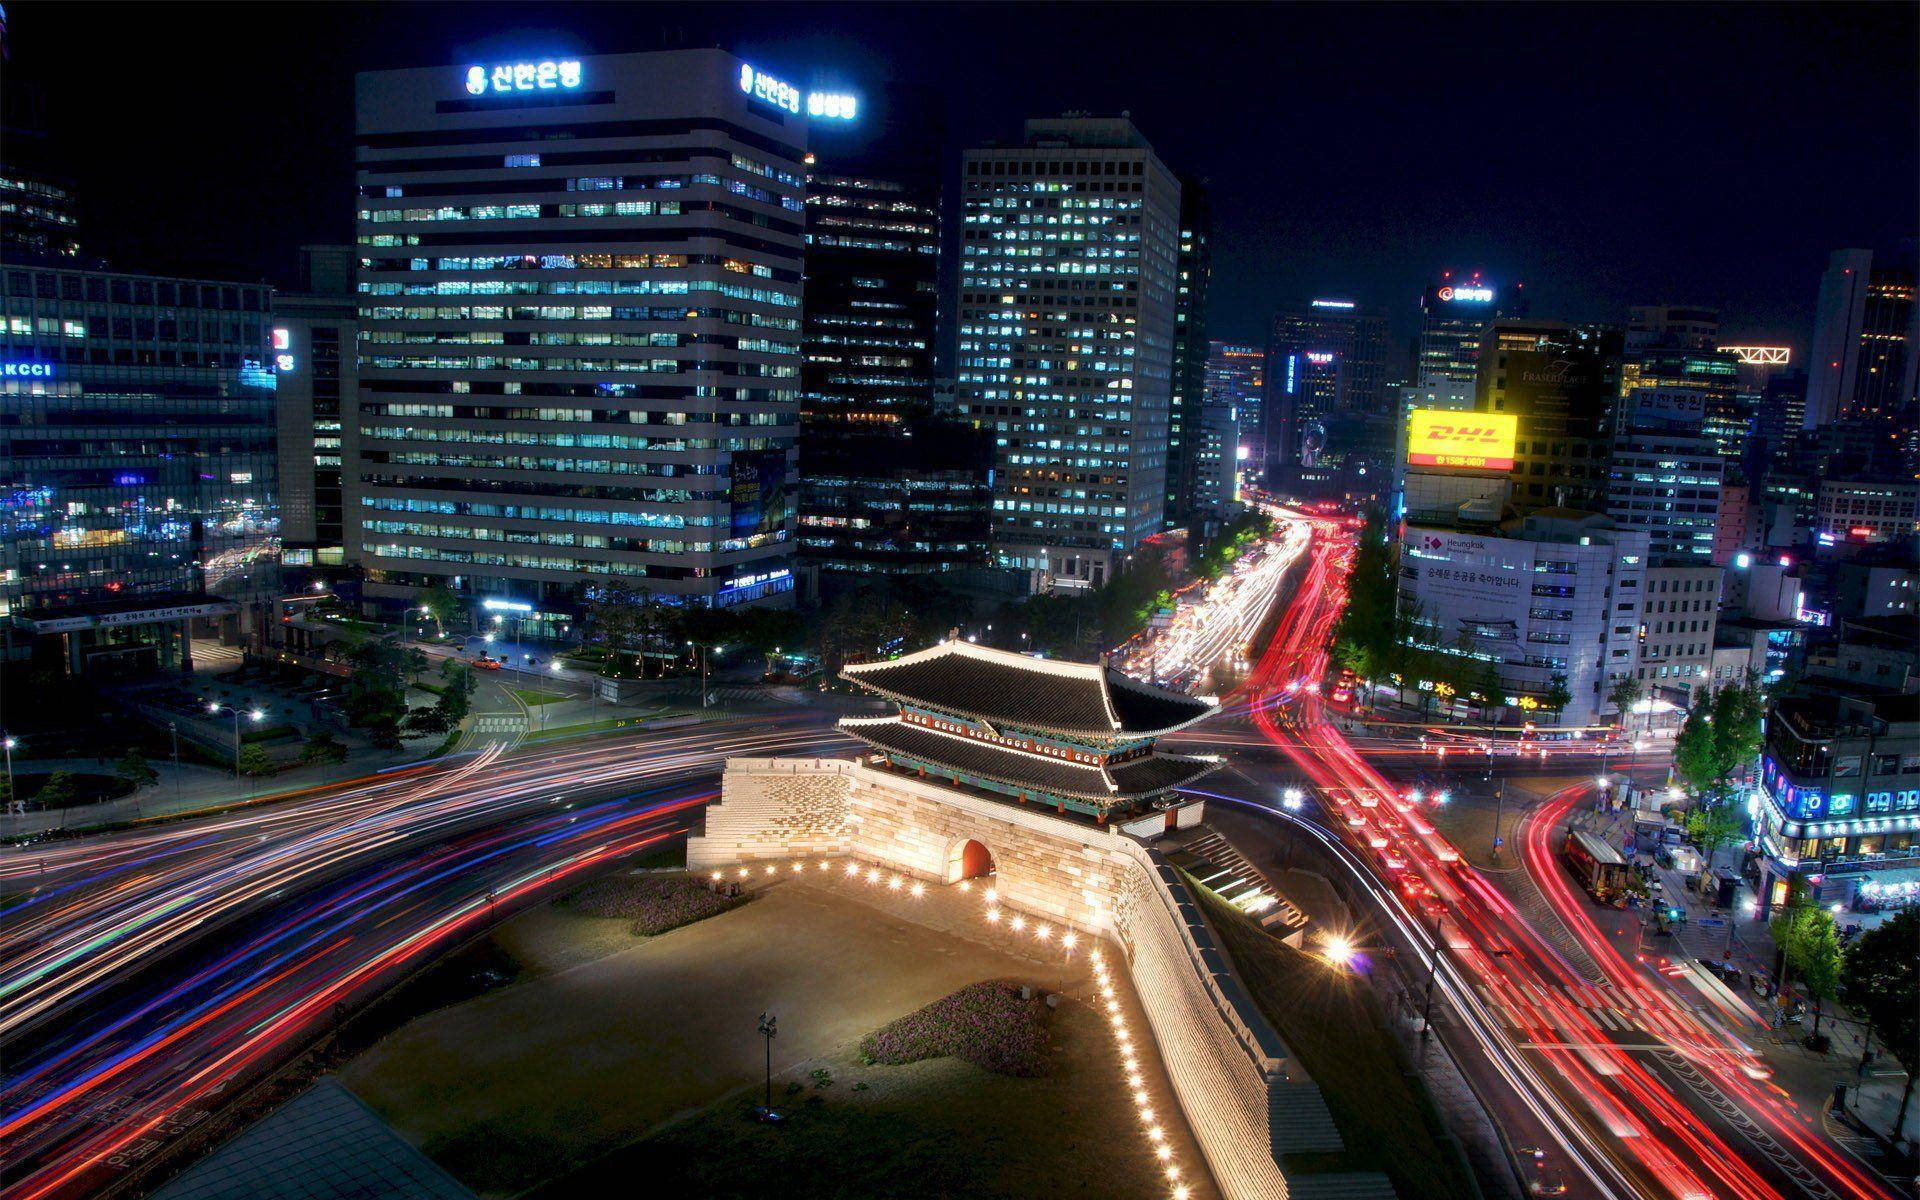 The Eight Gates South Korea